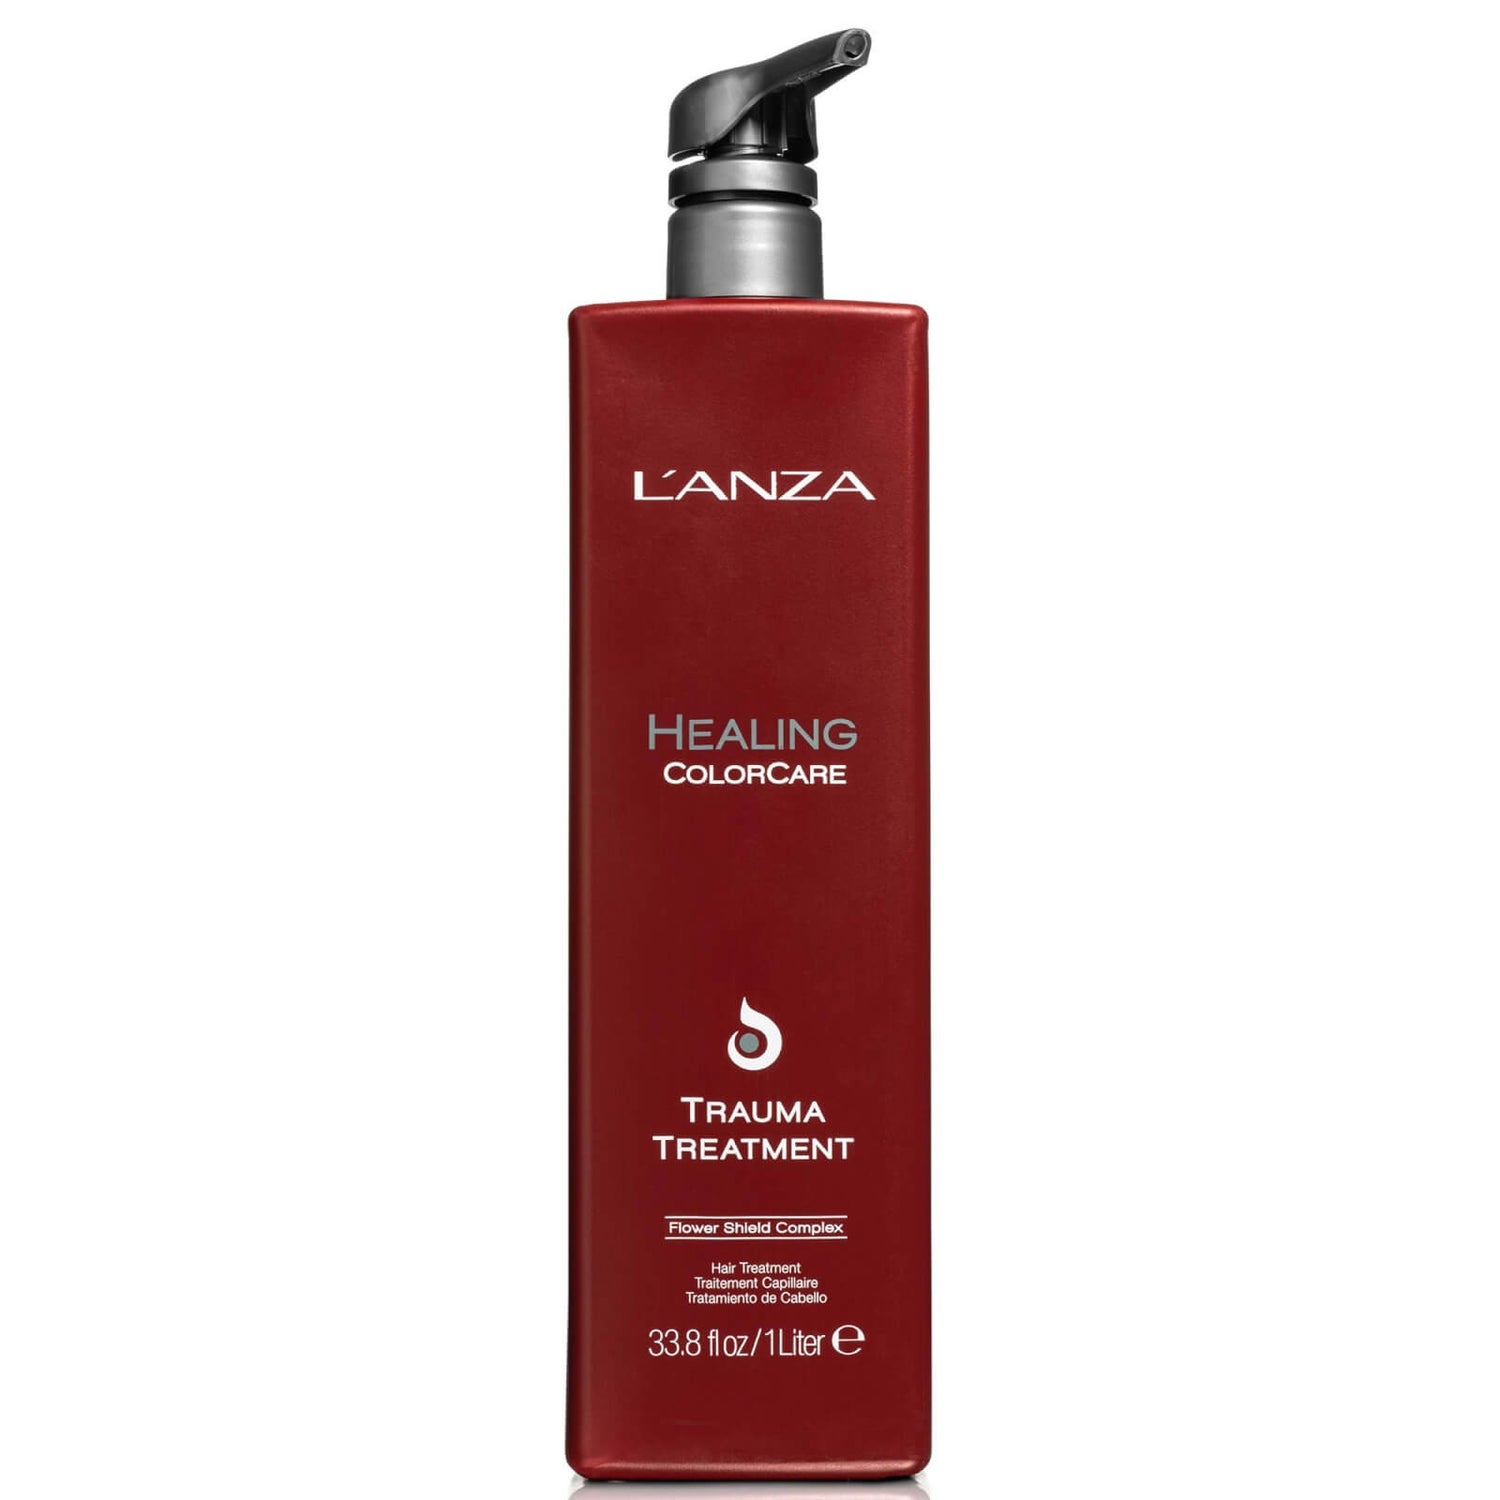 Soin traitant pour cheveux abîmés "Healing Colorcare" de L'Anza (1 litre) - (valeur : 185€)